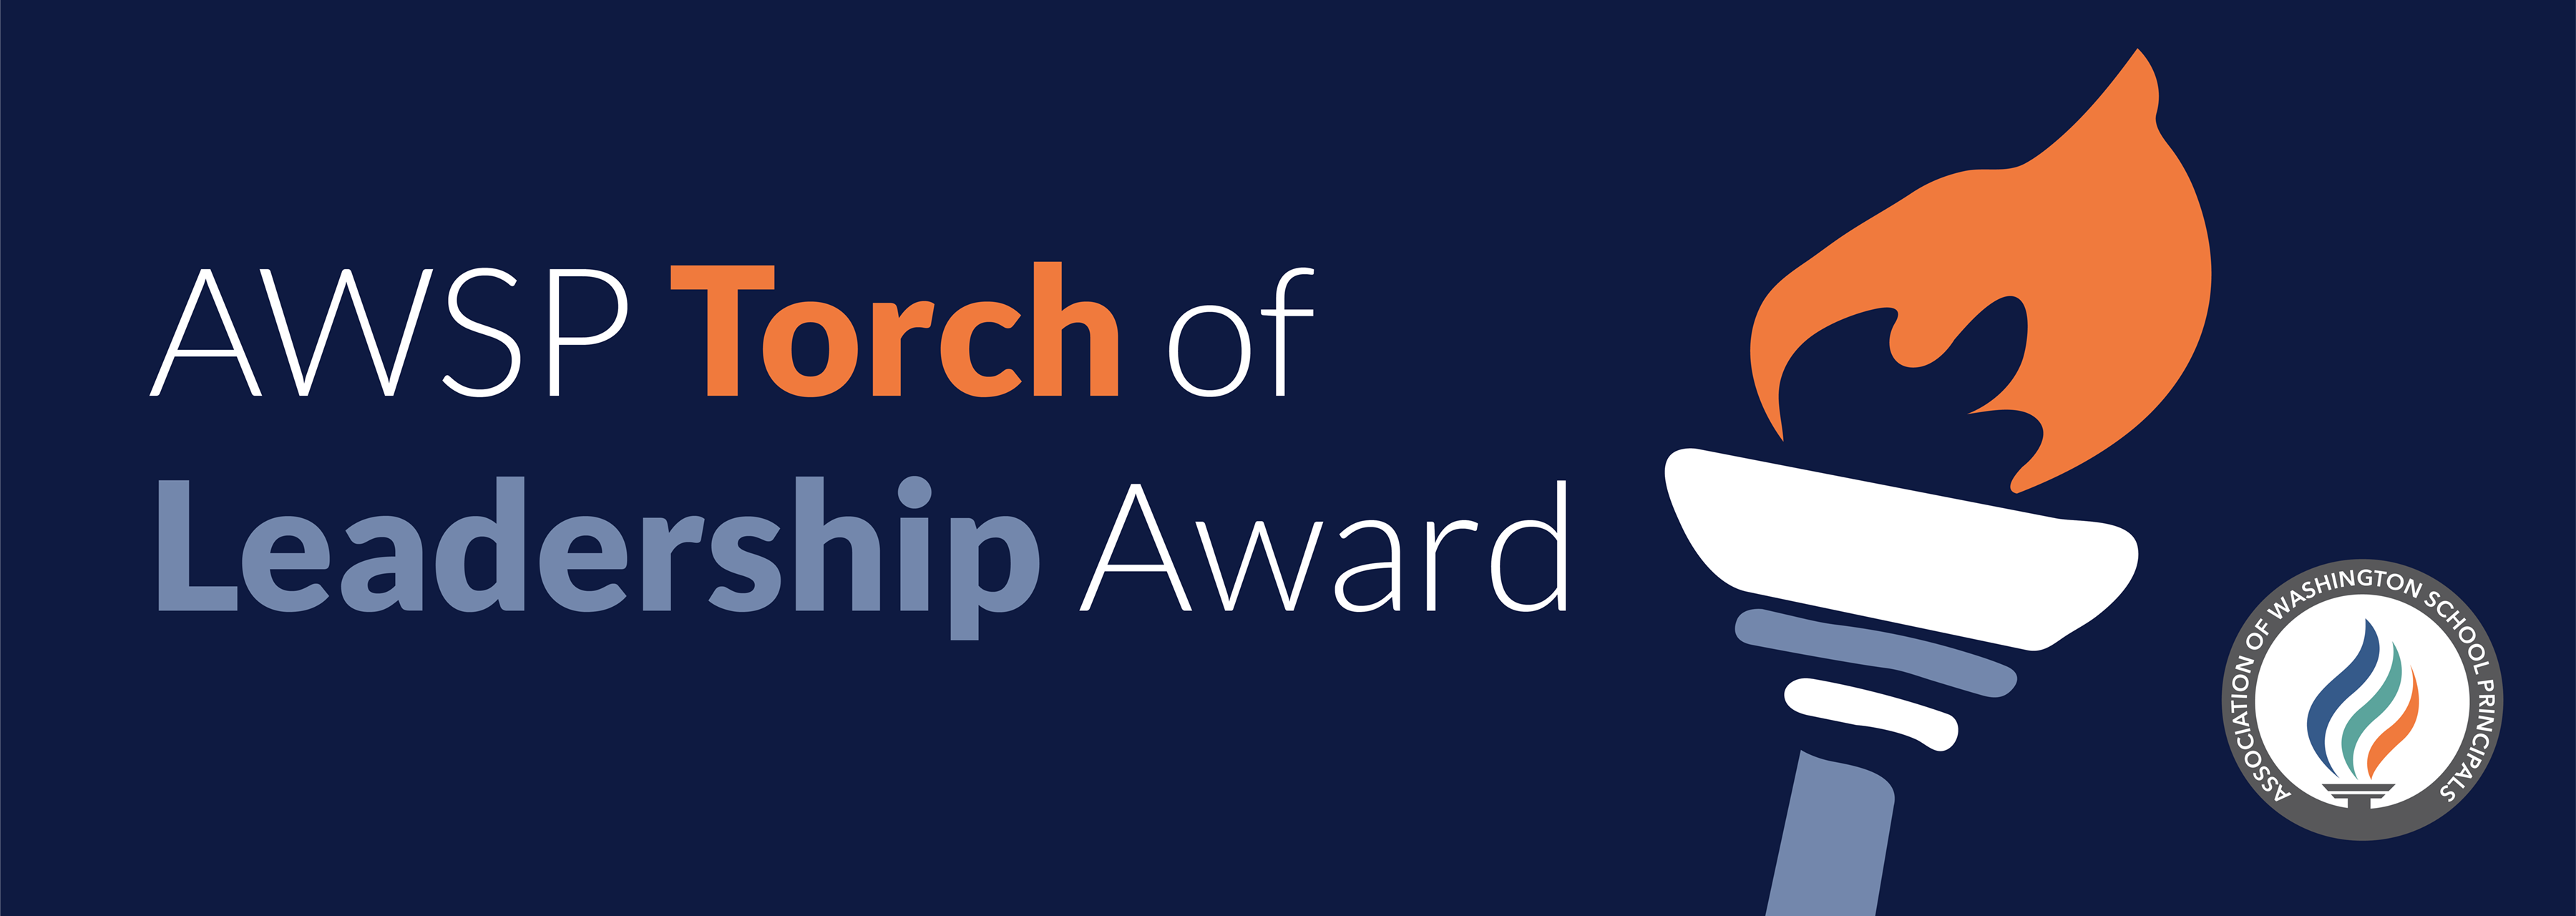 Torch of Leadership Award header